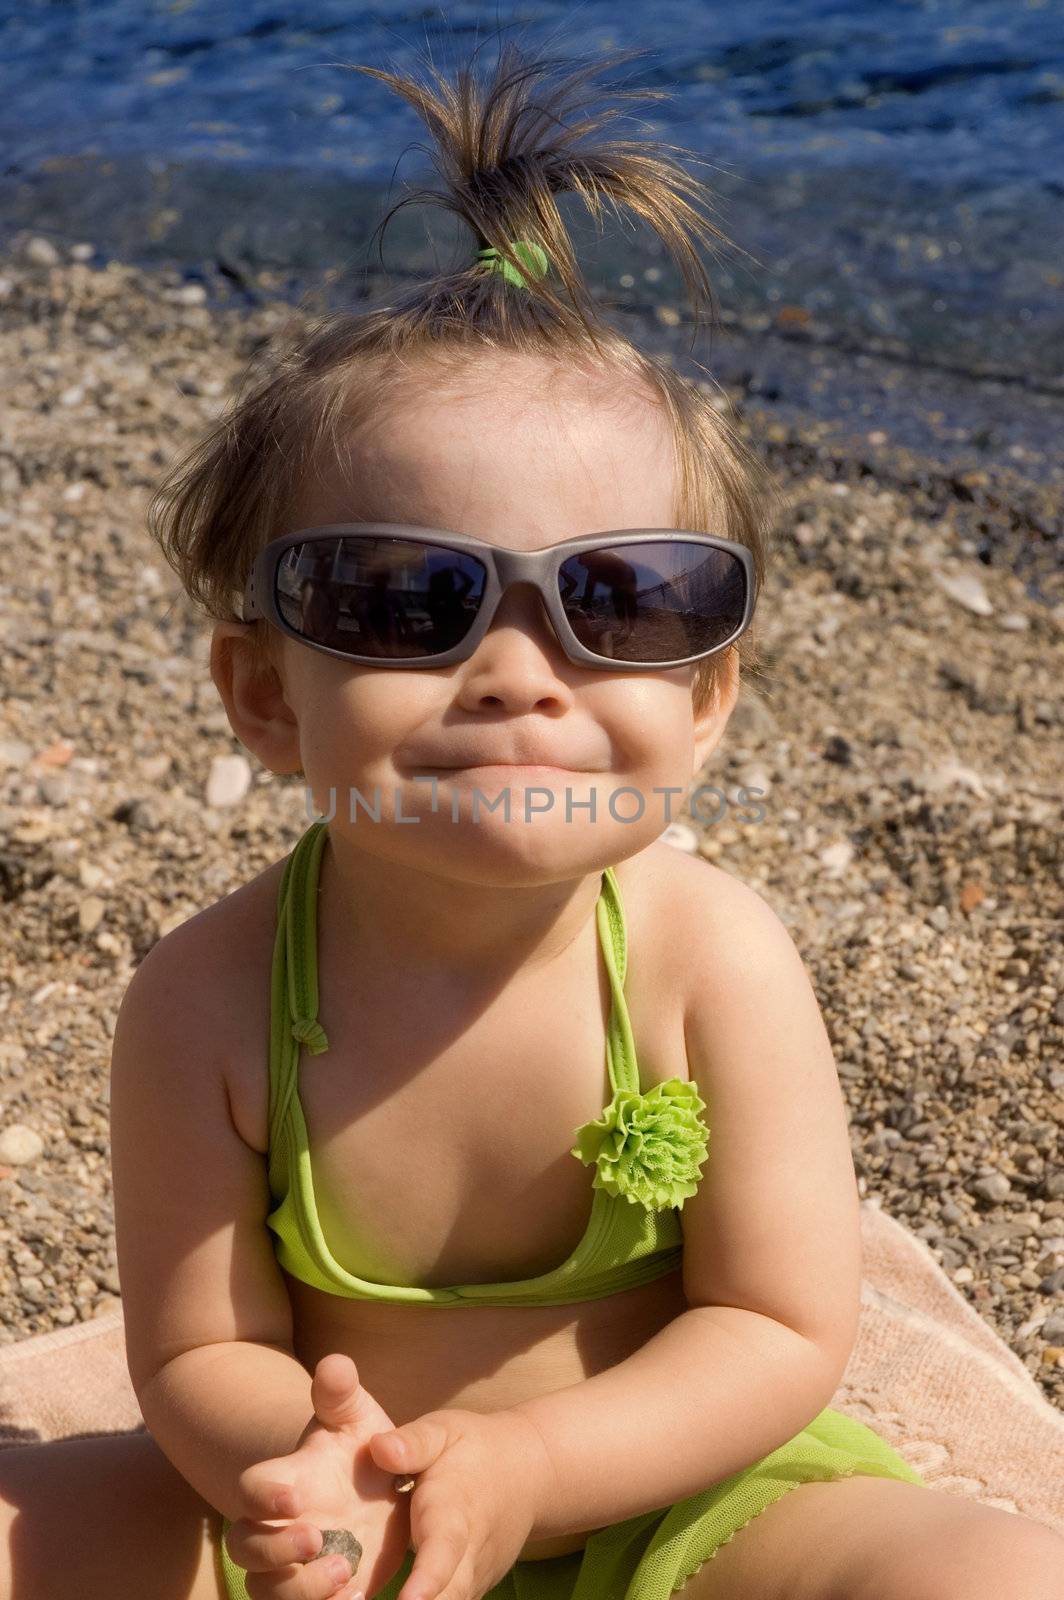 Cute little toddler enjoying the beach